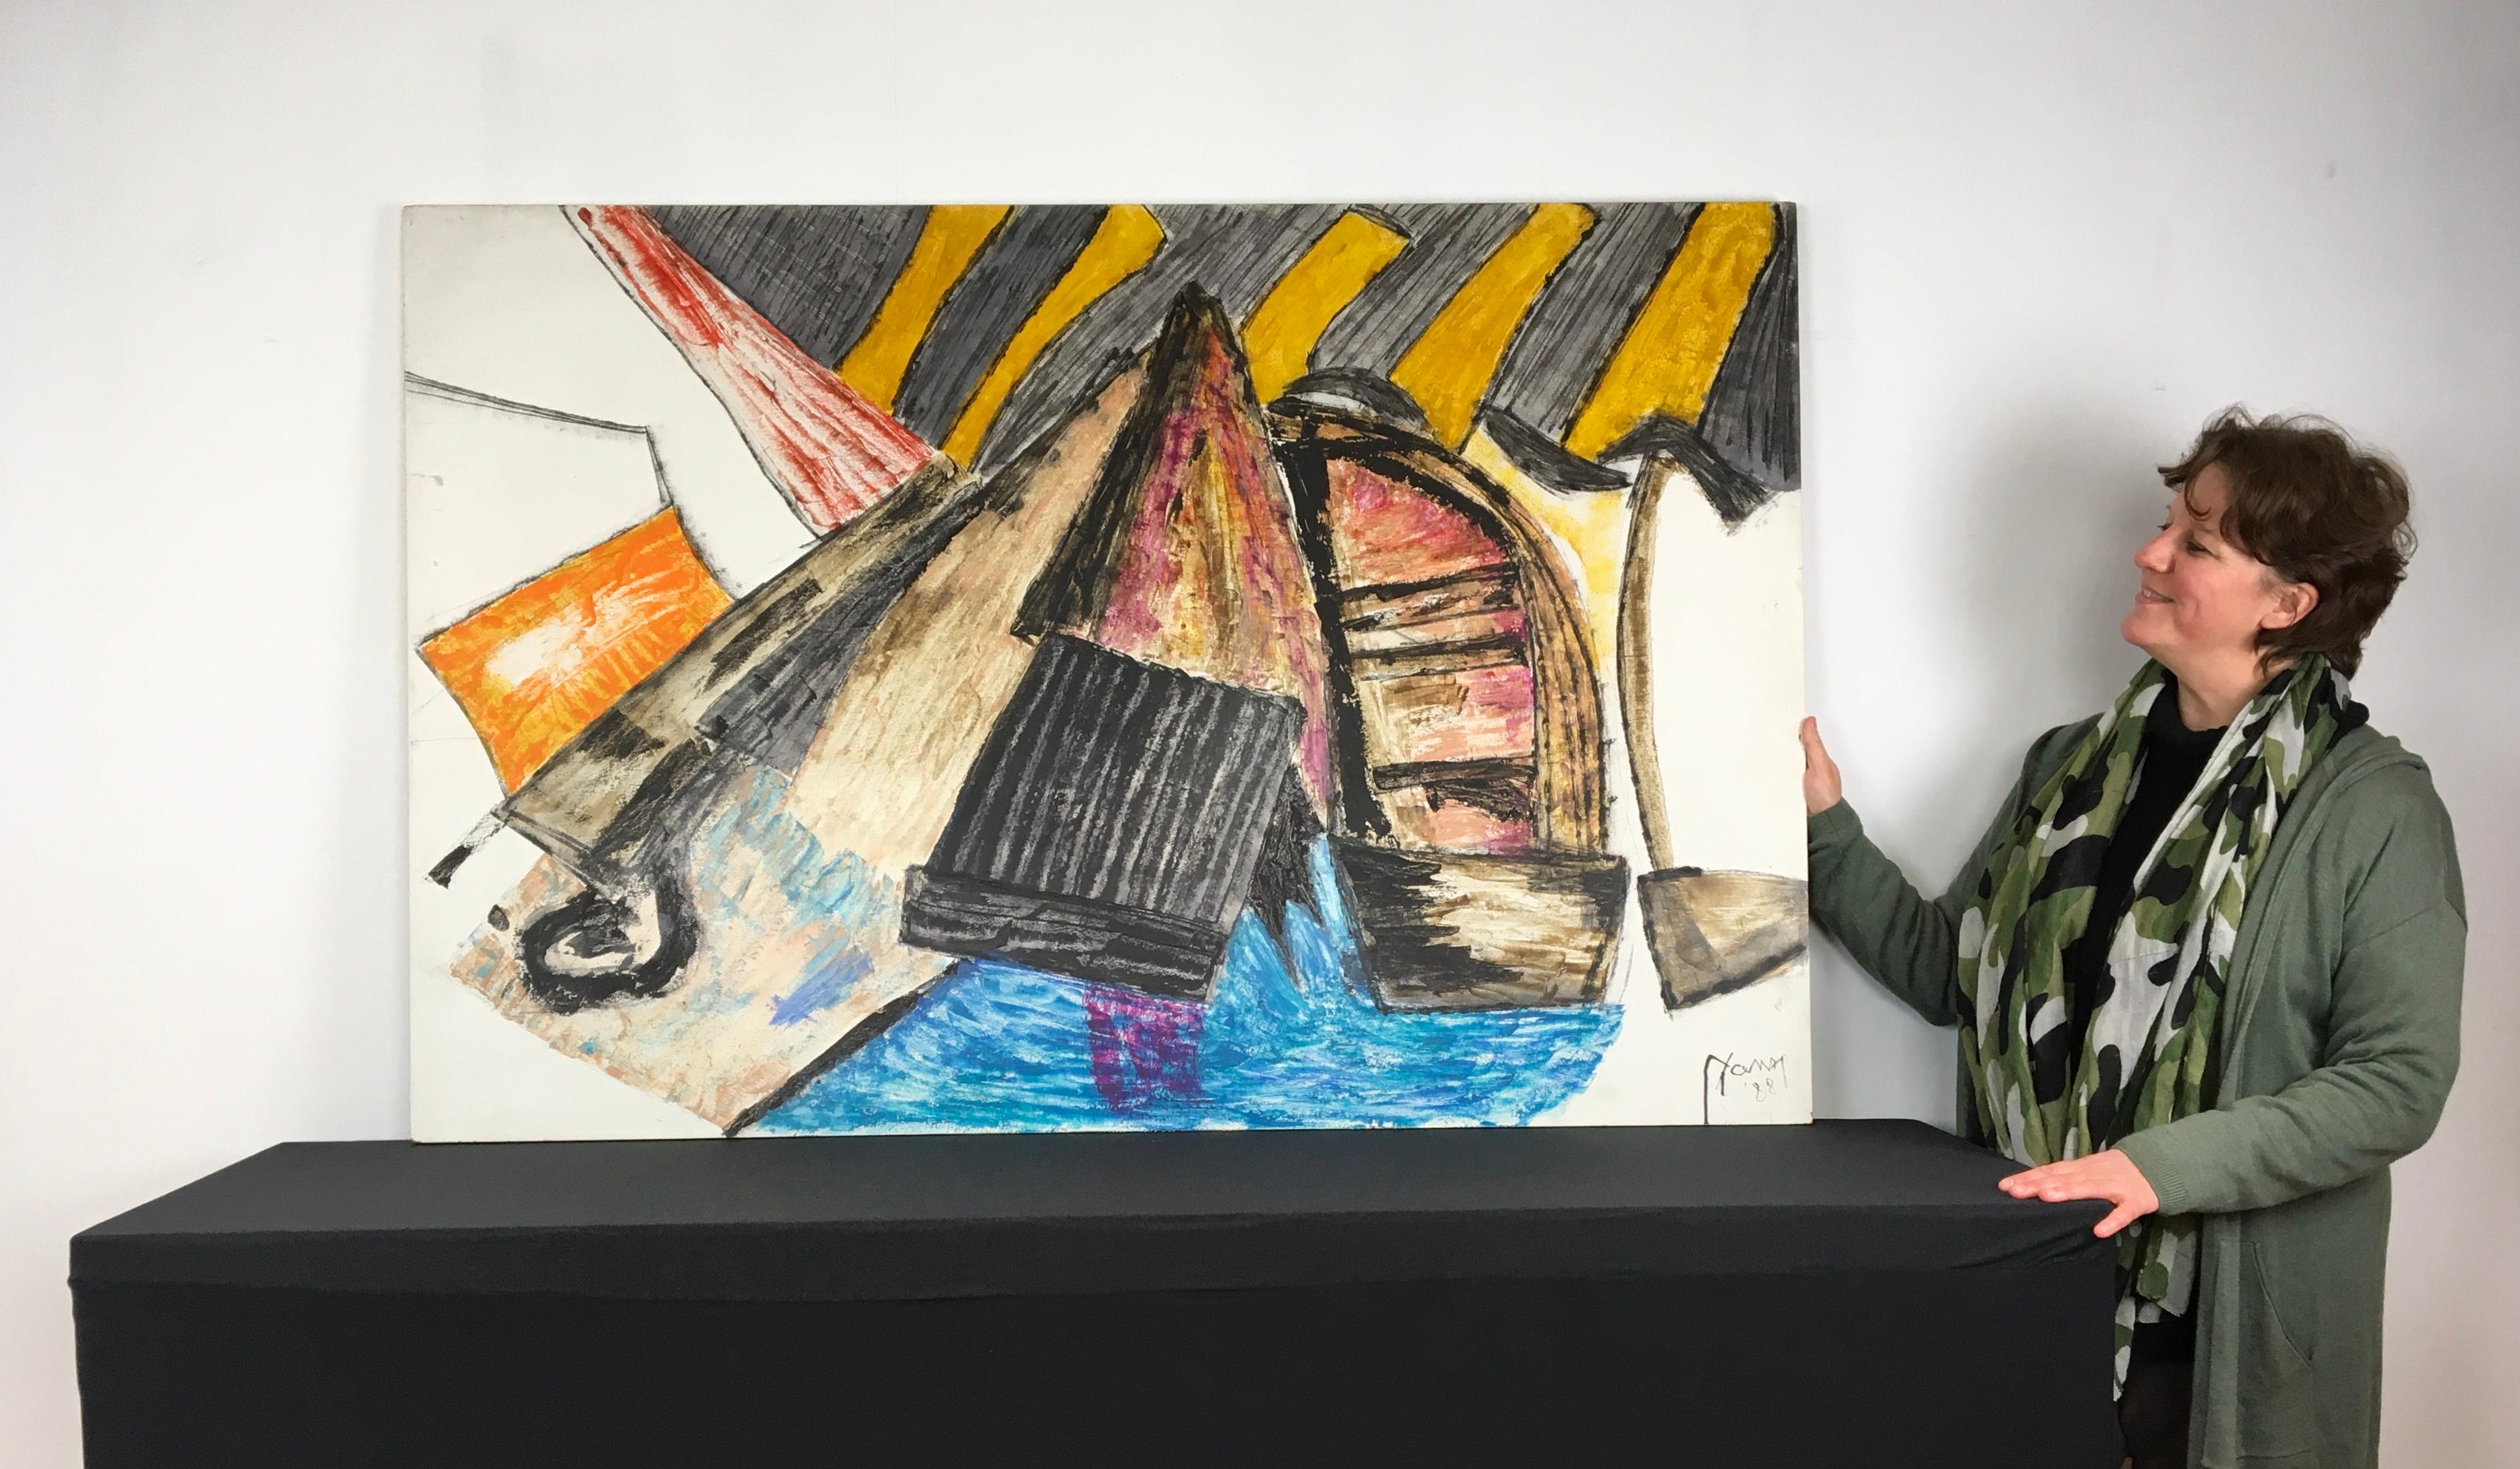 Œuvre d'art abstraite peinte avec des bateaux par l'artiste anversois Yann. 
Cette œuvre polychrome sur bois, très expressive et colorée, date de 1988 et a été signée par lui.
Vous pouvez voir des bateaux - des voiliers - dans l'eau ou la mer, de